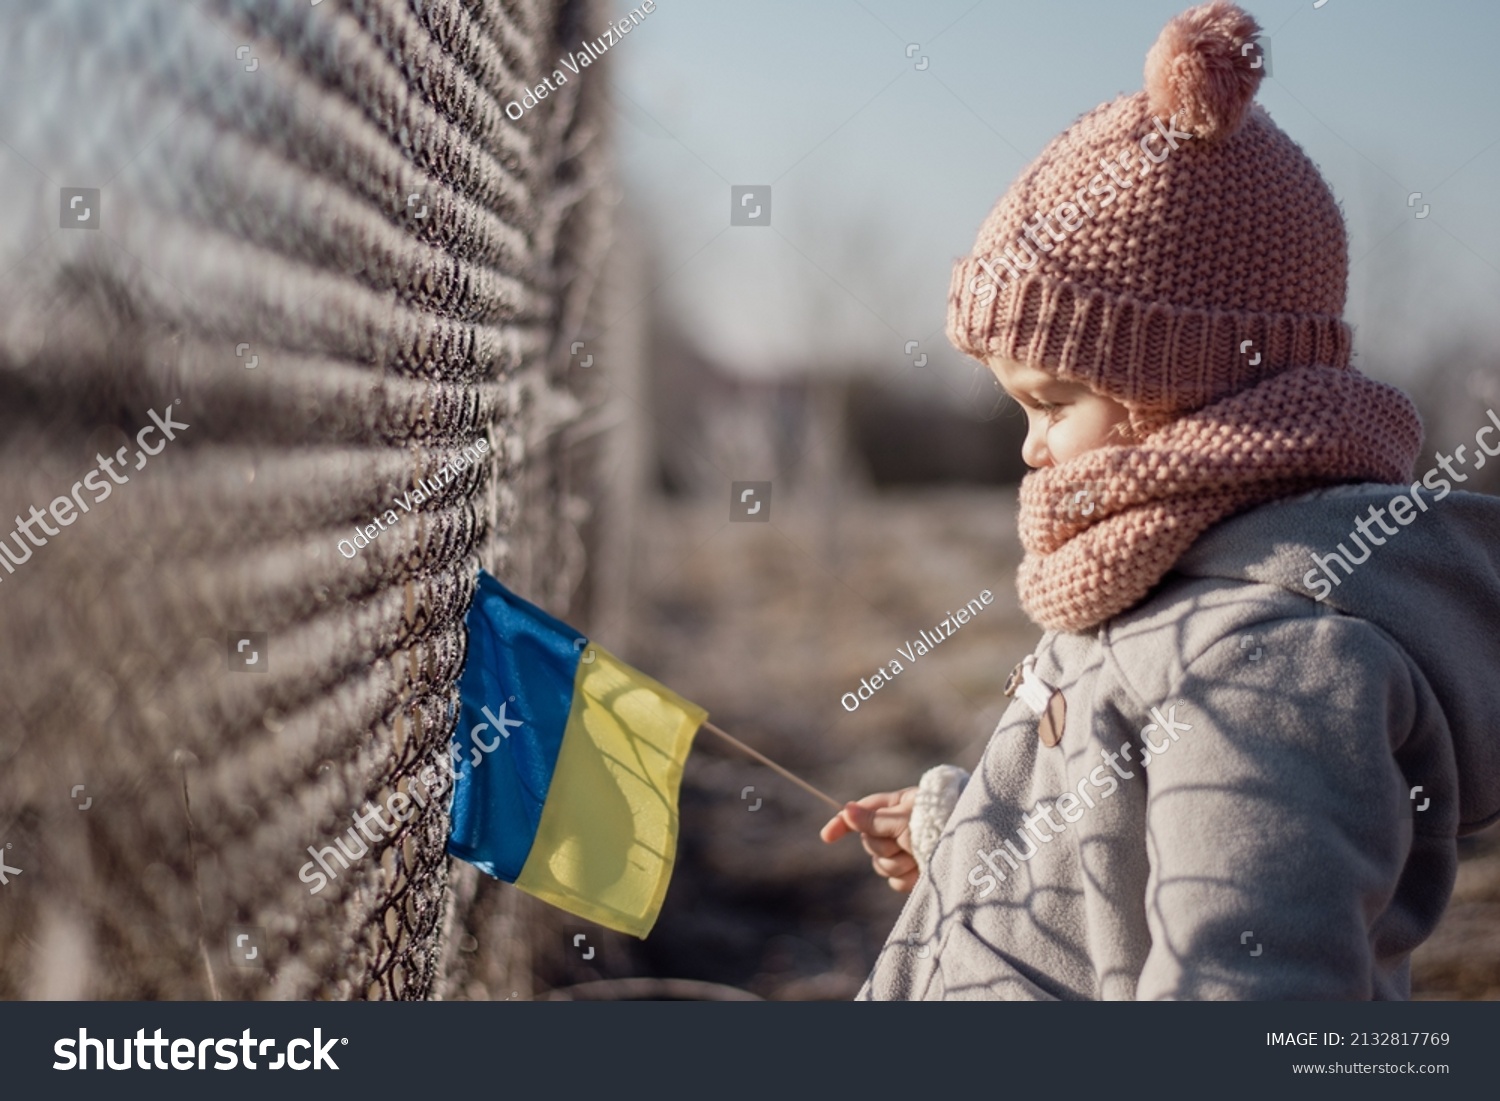 Girl holding Ukrainian flag, asking for peace, children against war, kids in danger, freedom, stop fighting, Blue Yellow #2132817769